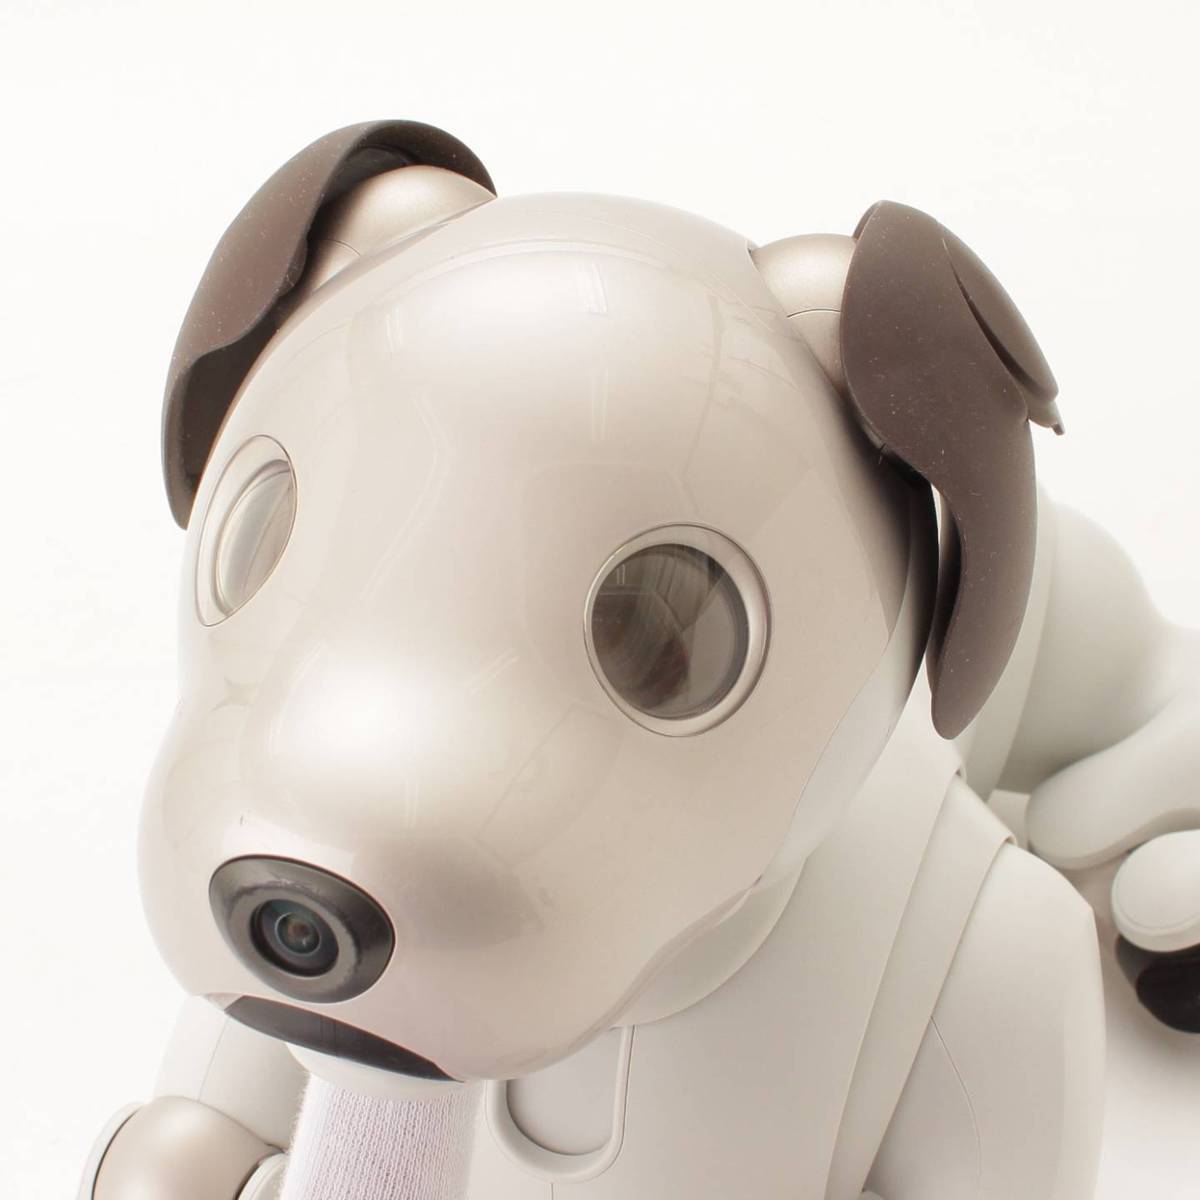 ソニー(SONY) アイボ aibo 犬 ペットロボット ERS-1000 ホワイト